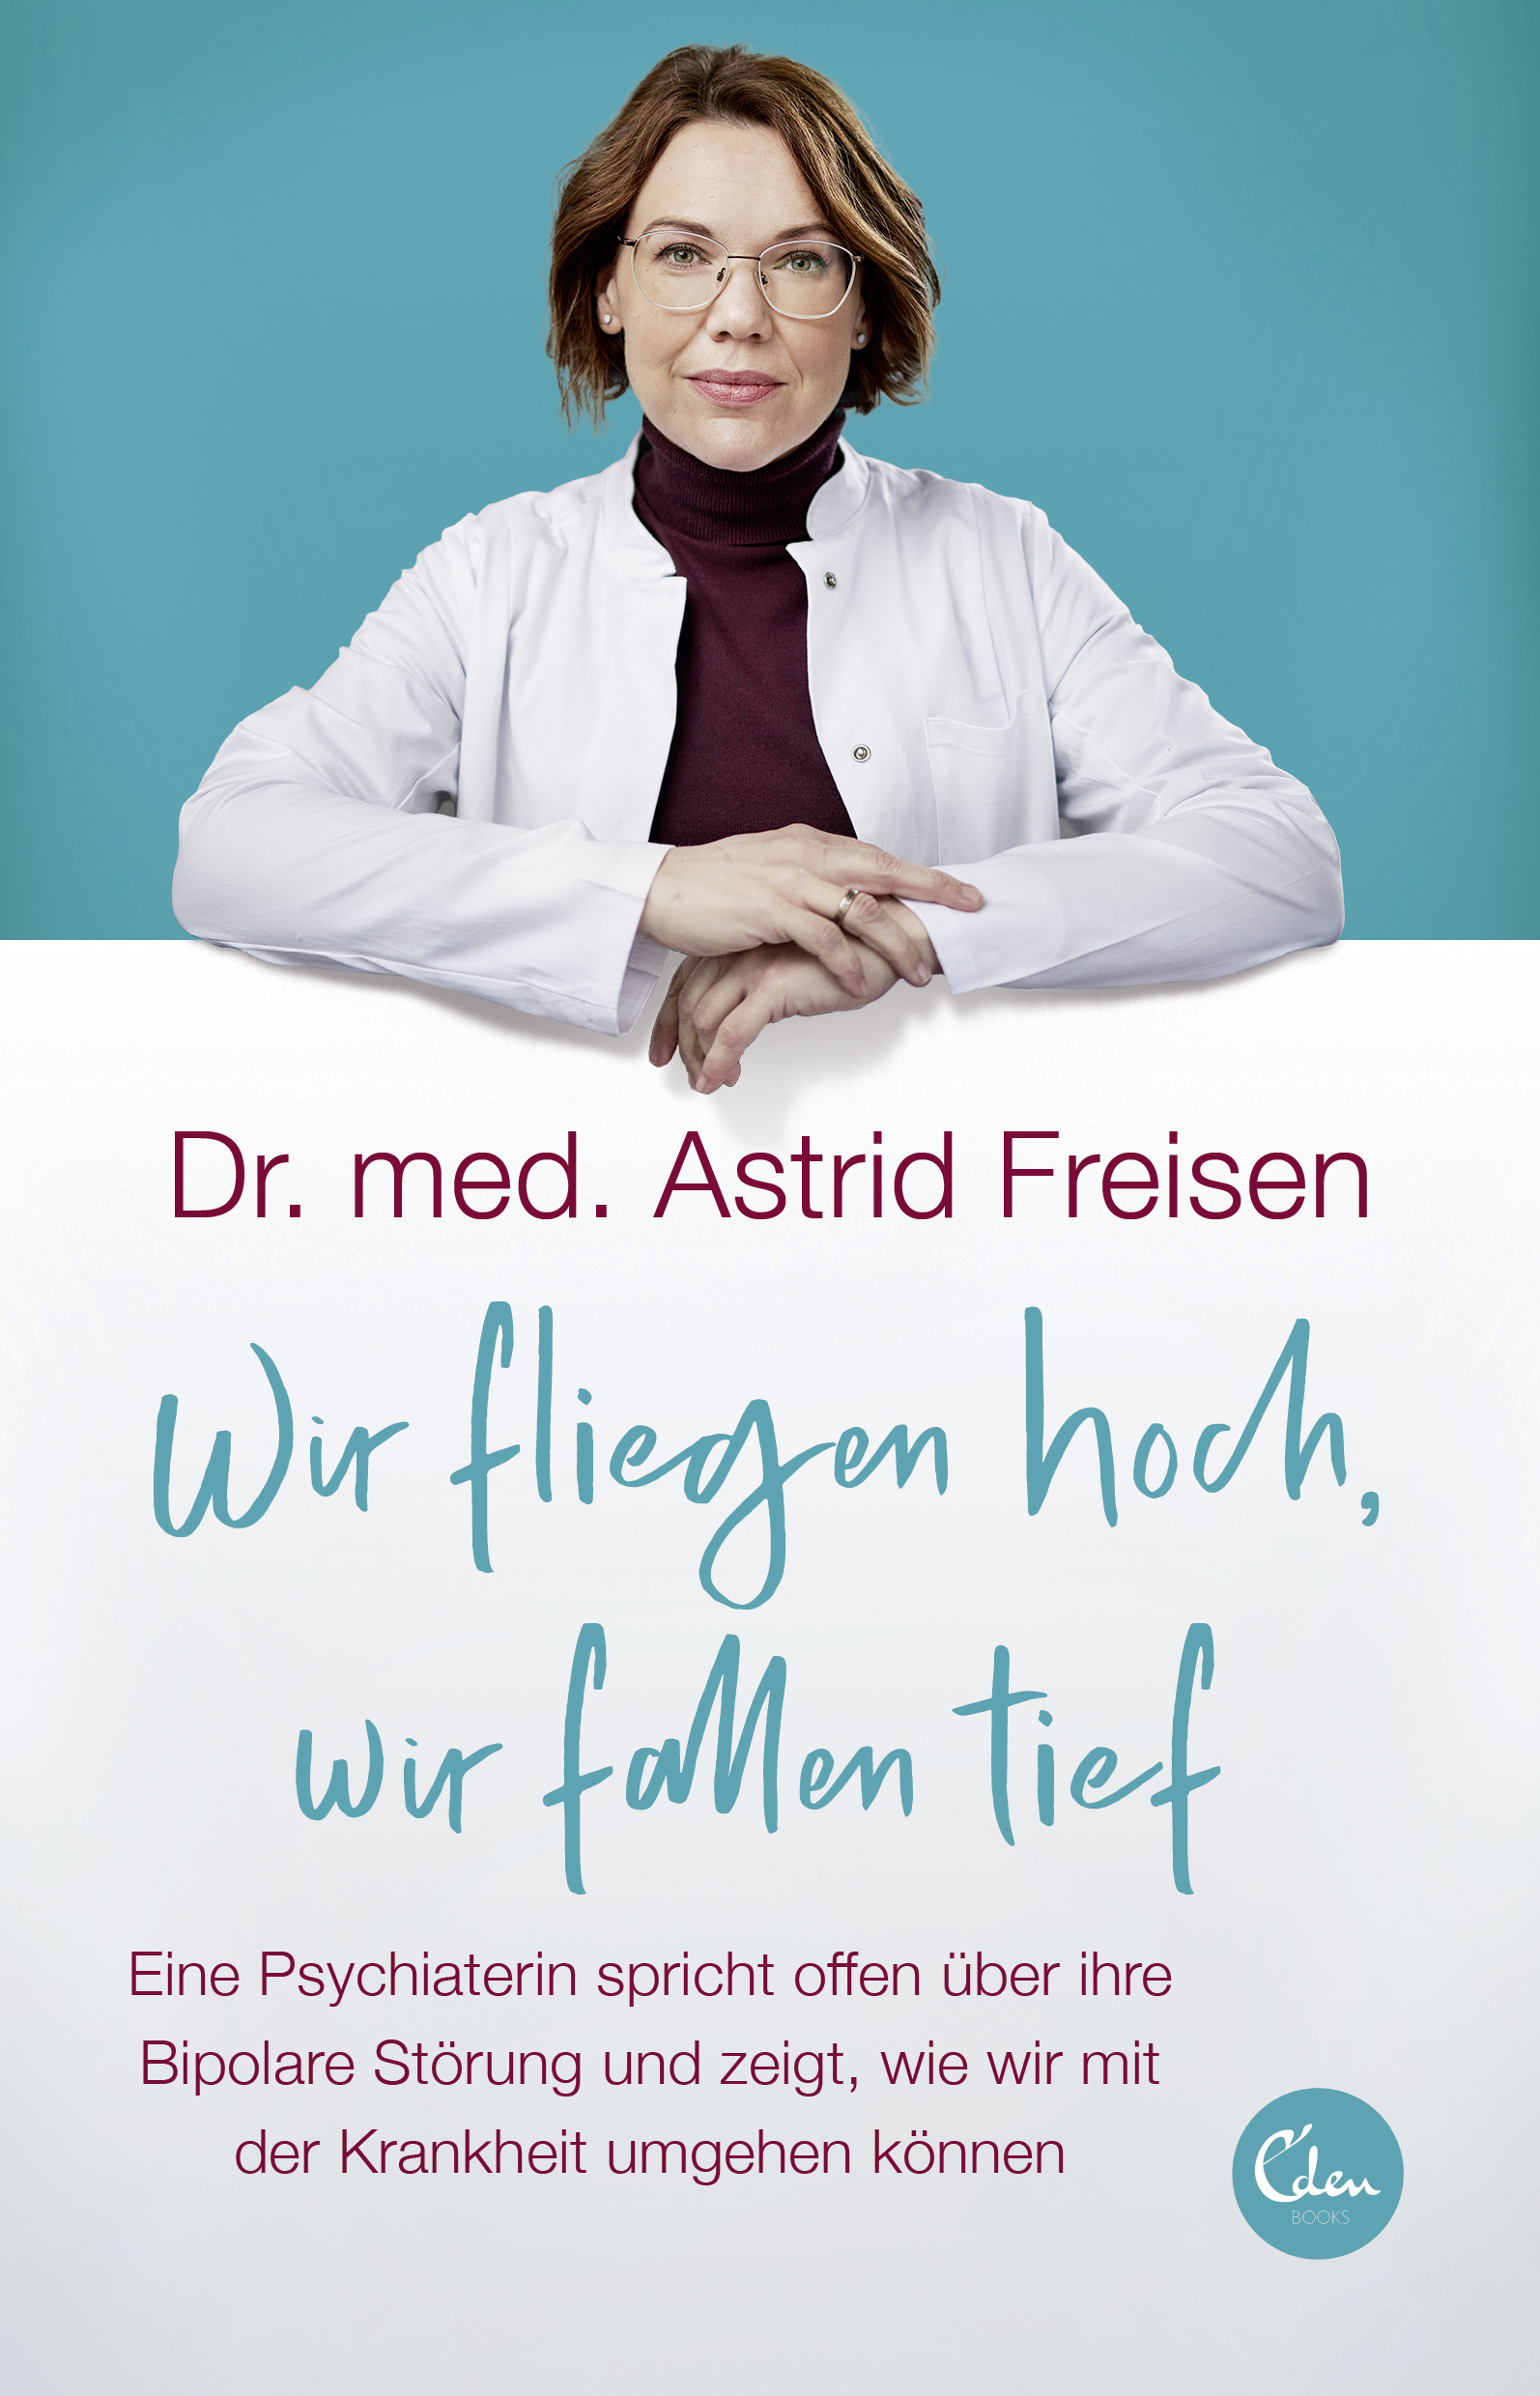 Dr. med. Astrid Freisen: Wir fliegen hoch, wir fallen tief